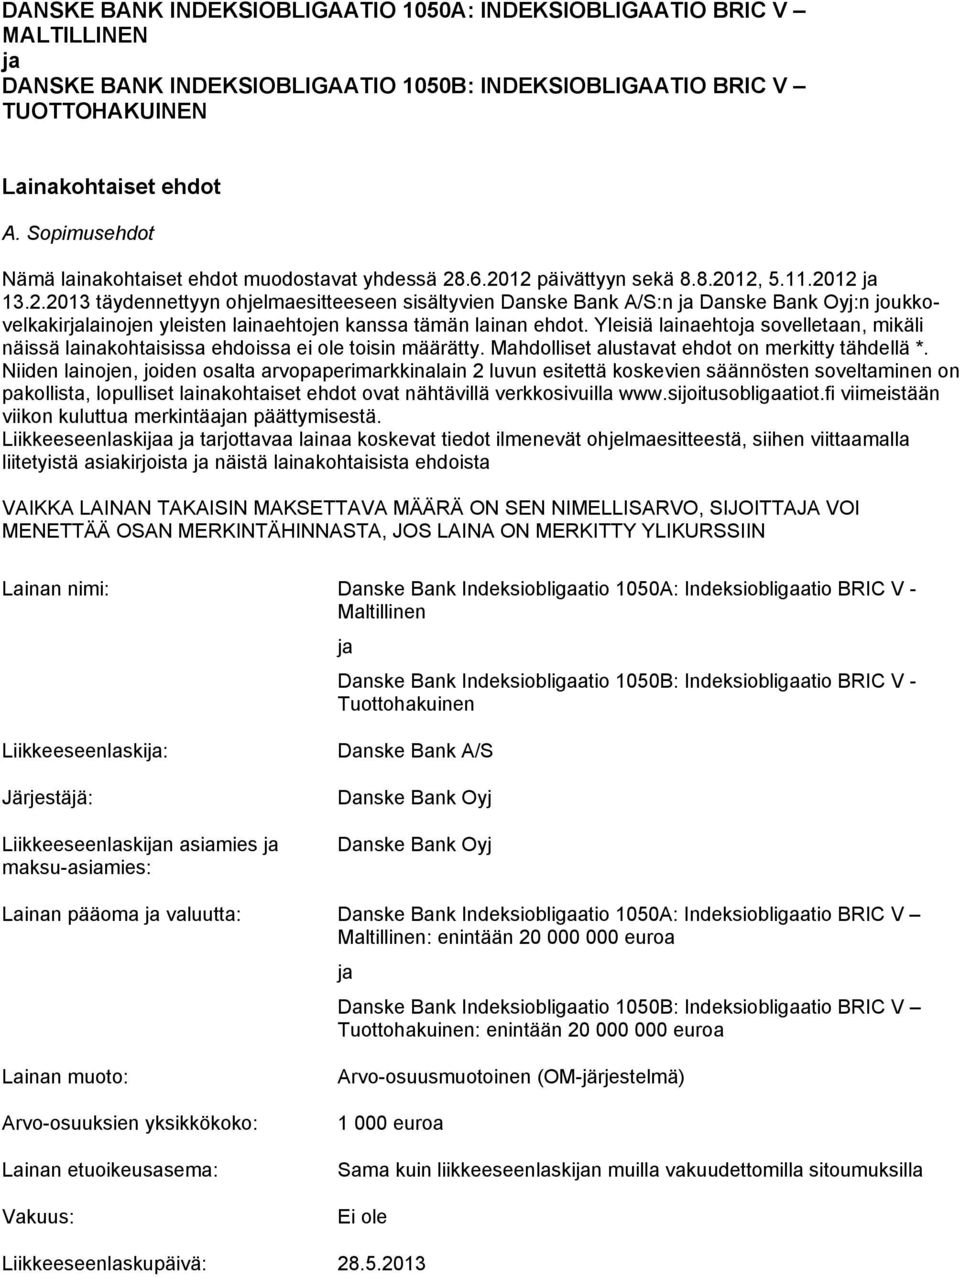 .6.2012 päivättyyn sekä 8.8.2012, 5.11.2012 ja 13.2.2013 täydennettyyn ohjelmaesitteeseen sisältyvien Danske Bank A/S:n ja Danske Bank Oyj:n joukkovelkakirjalainojen yleisten lainaehtojen kanssa tämän lainan ehdot.